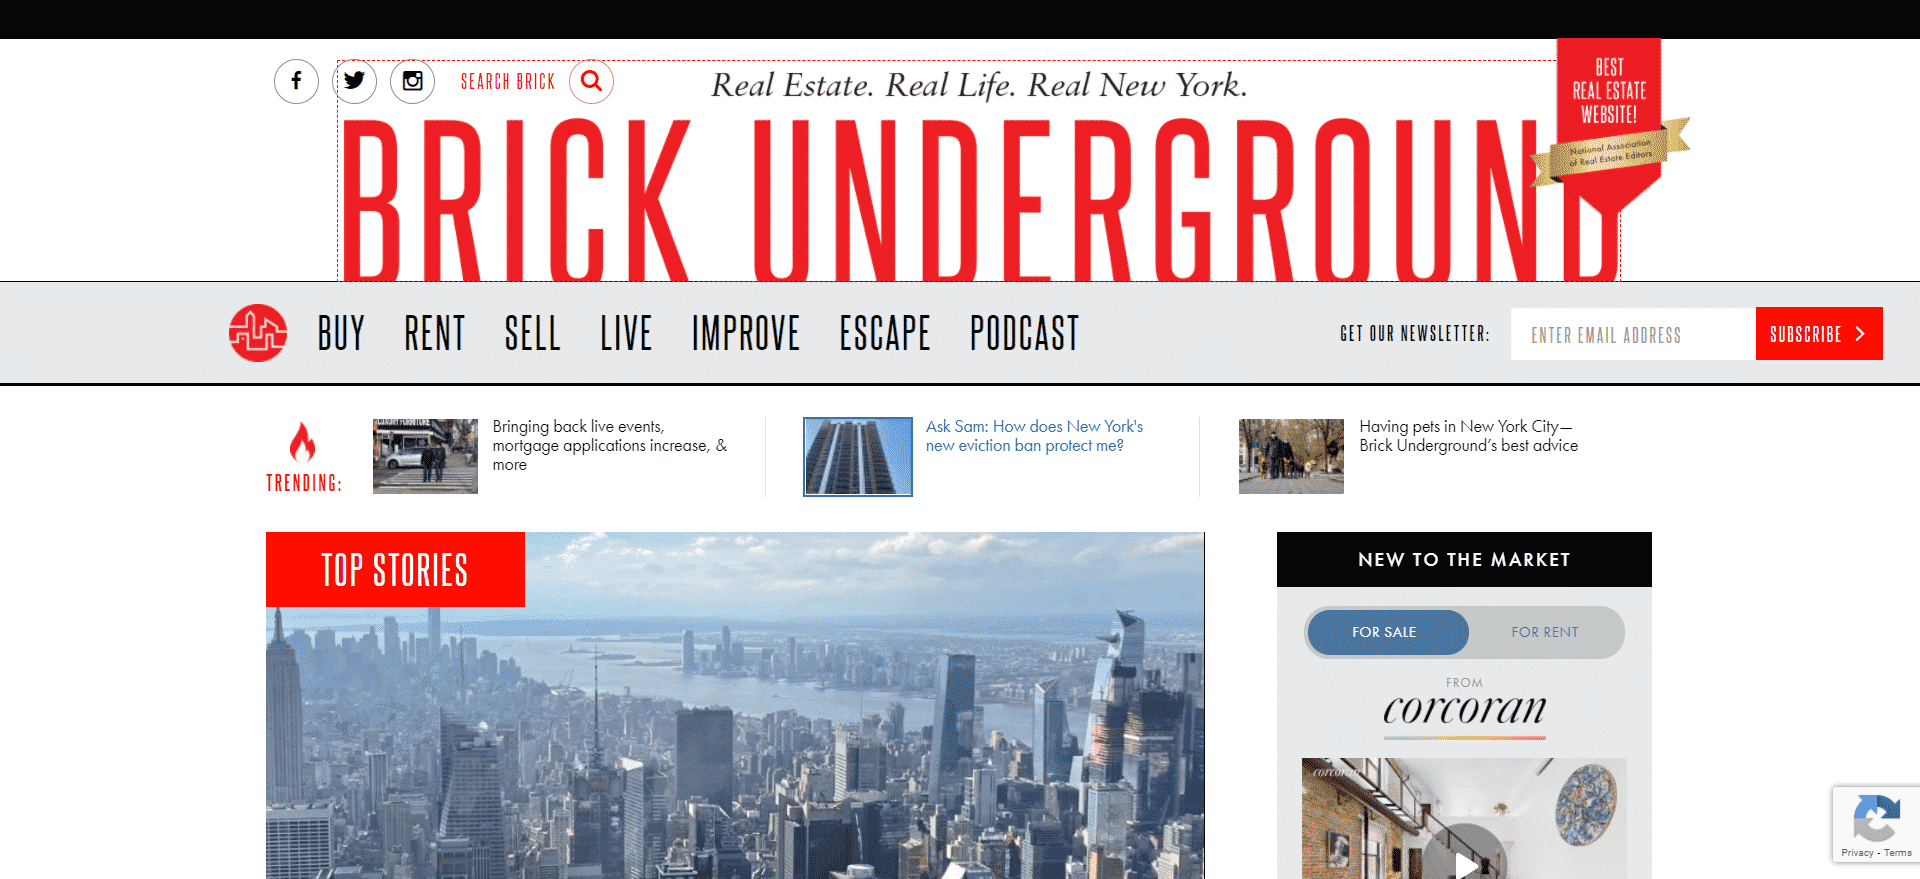 Brick Underground Blog site